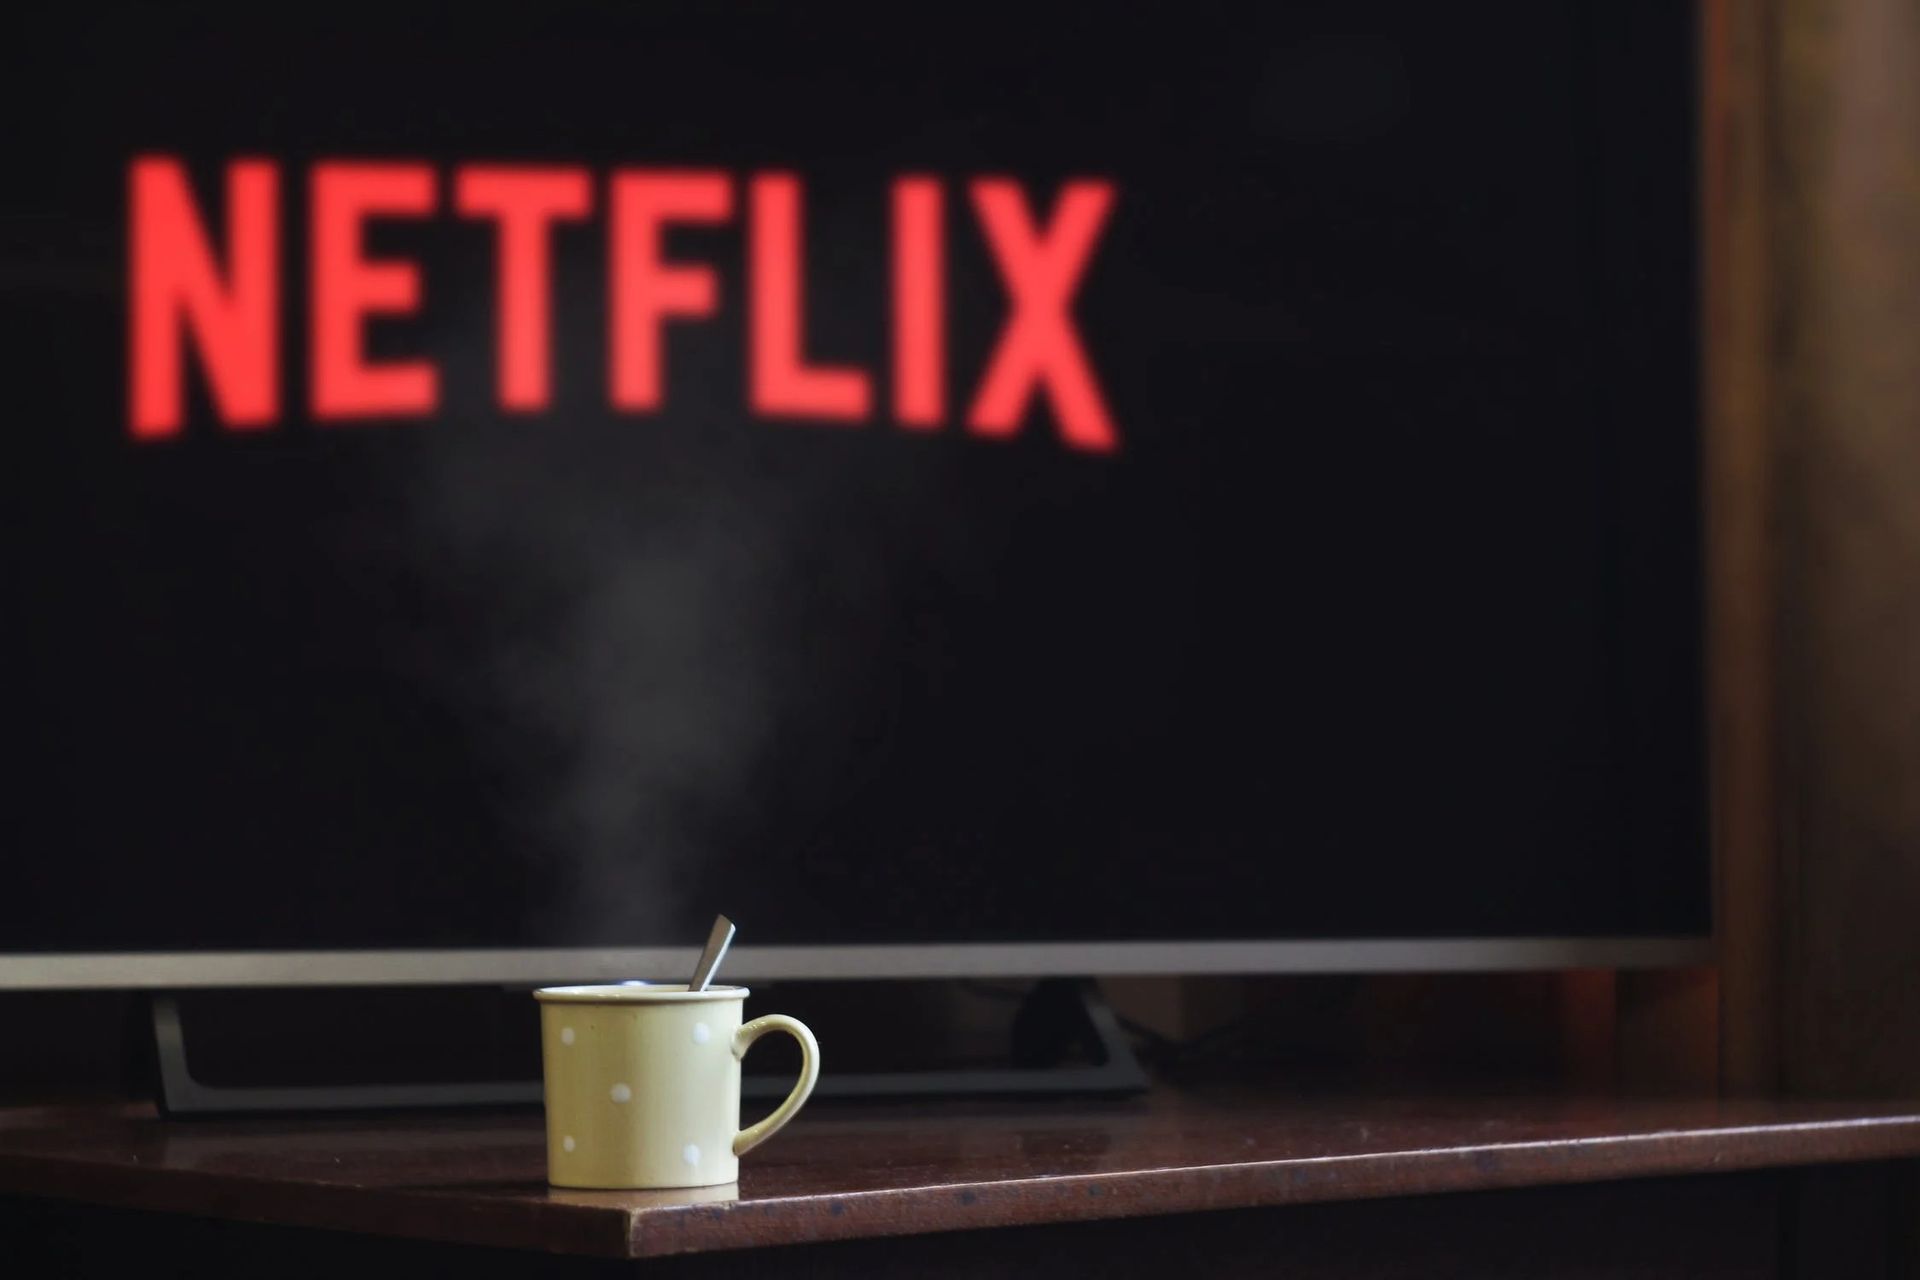 La plate-forme de streaming populaire Netflix ajoutera bientôt des flux en direct à son service.  Netflix pourrait bientôt être une plate-forme clé pour les artistes debout et autres émissions en direct